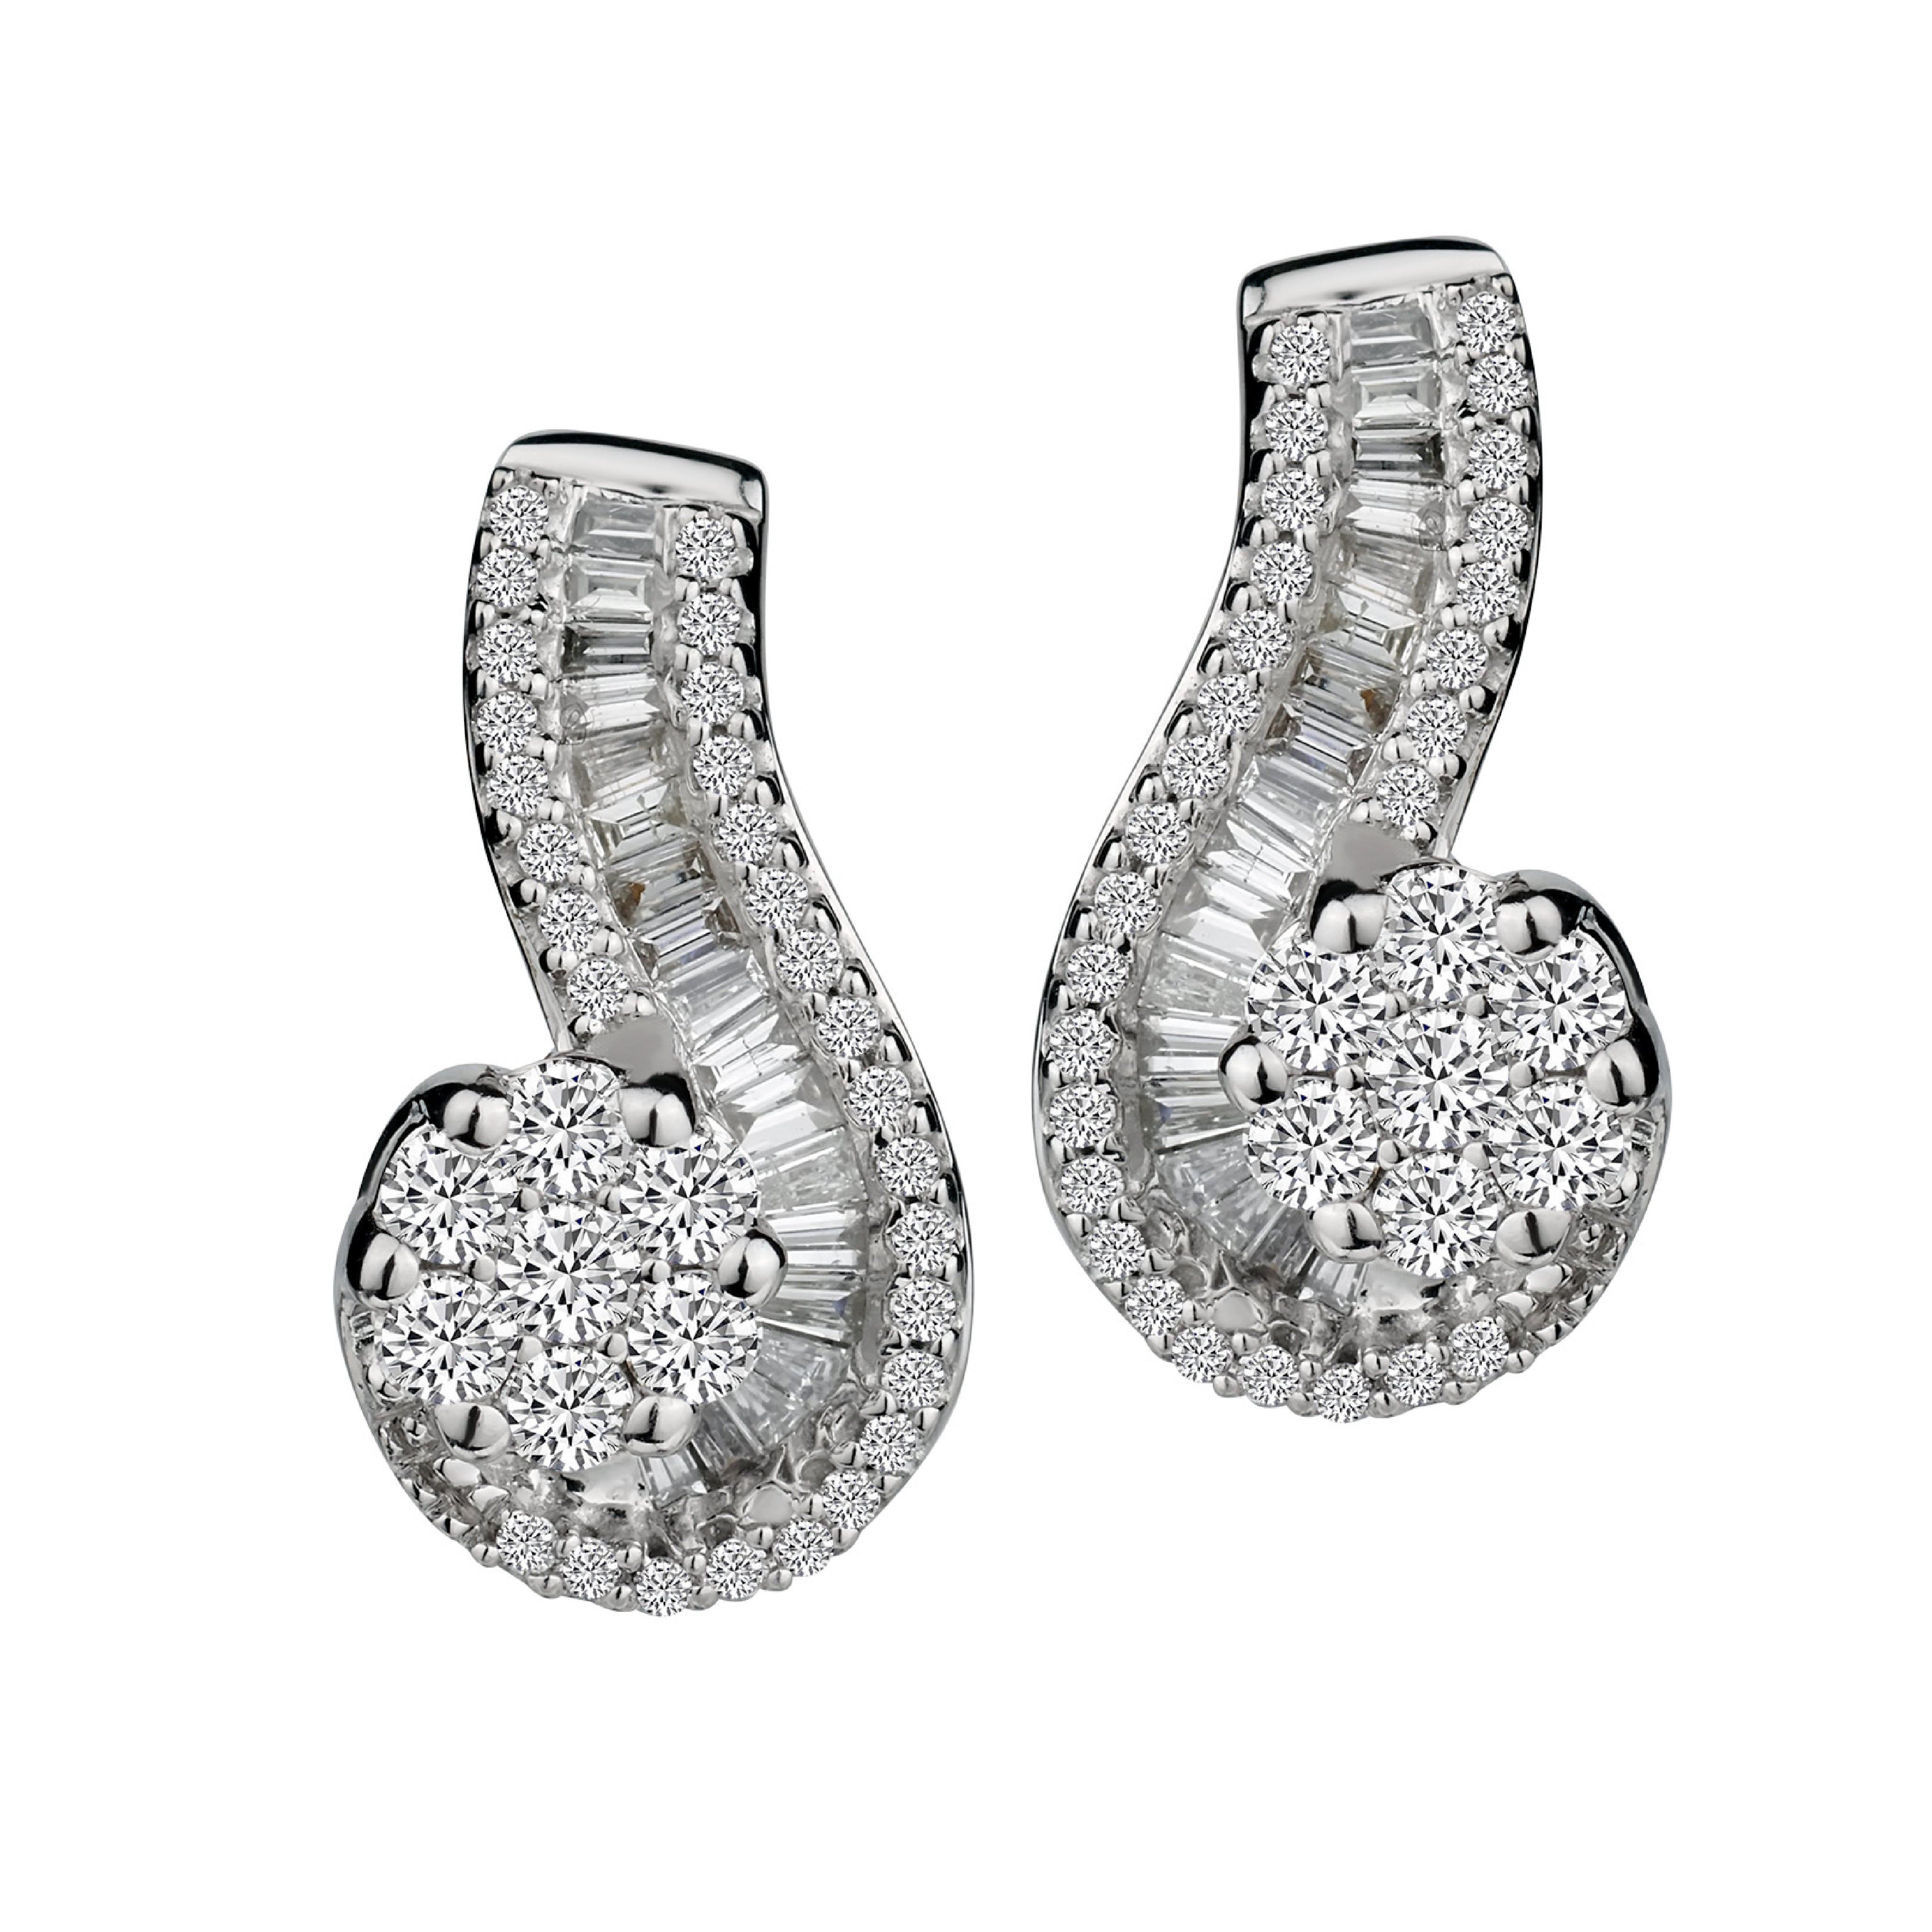  Star Diamond Earrings 18K White Gold 0.99 Carat (F-G-H